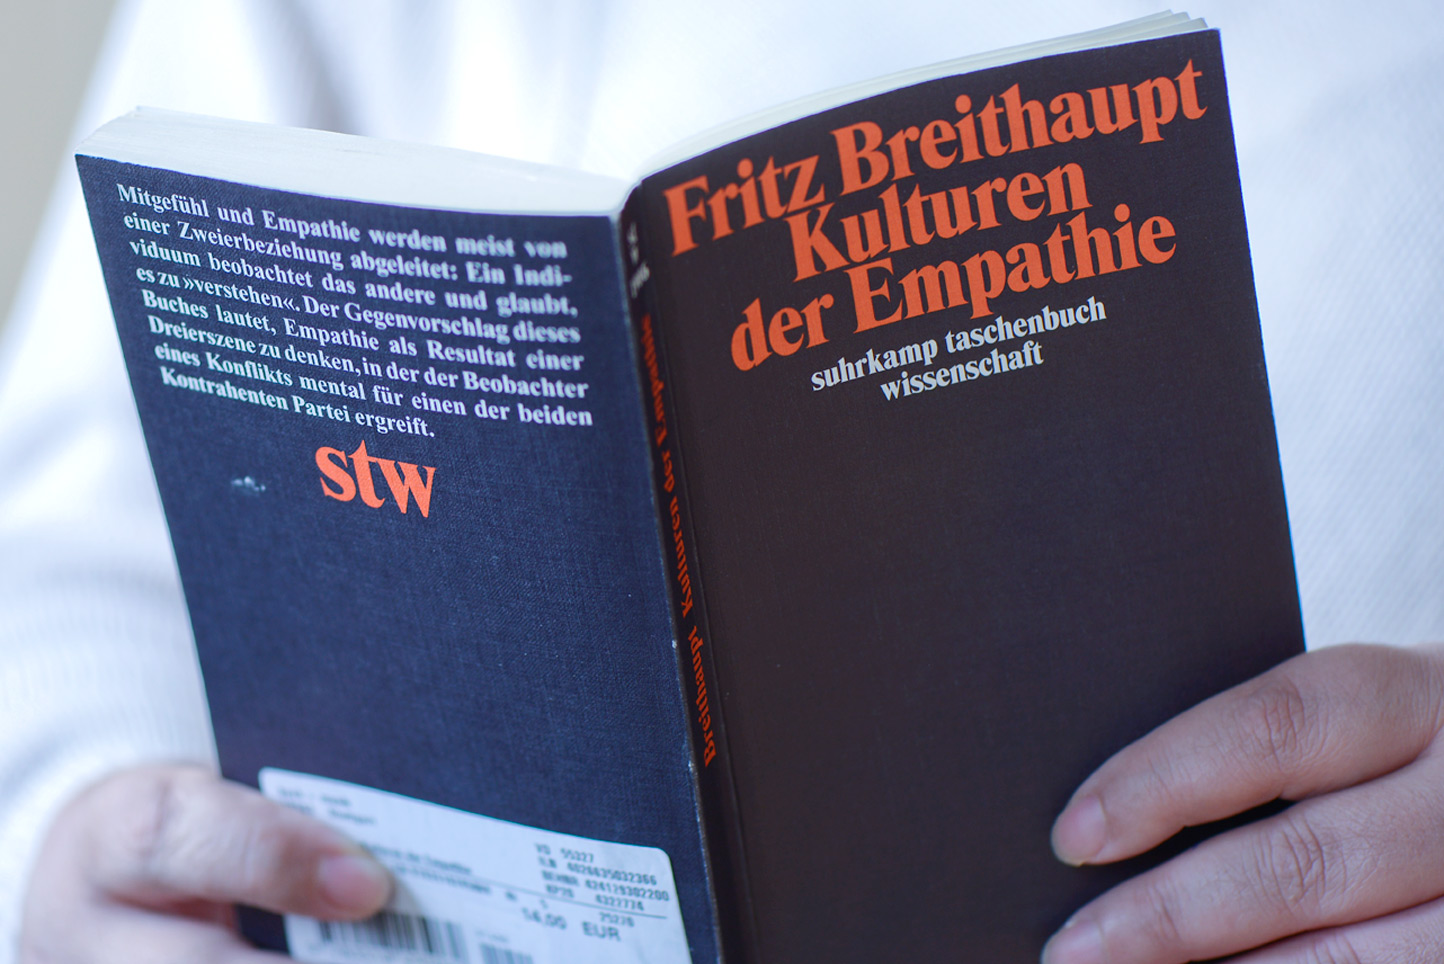 Auf dem Foto zu sehen: Buchcover "Kulturen der Empathie" von Fritz Breithaupt